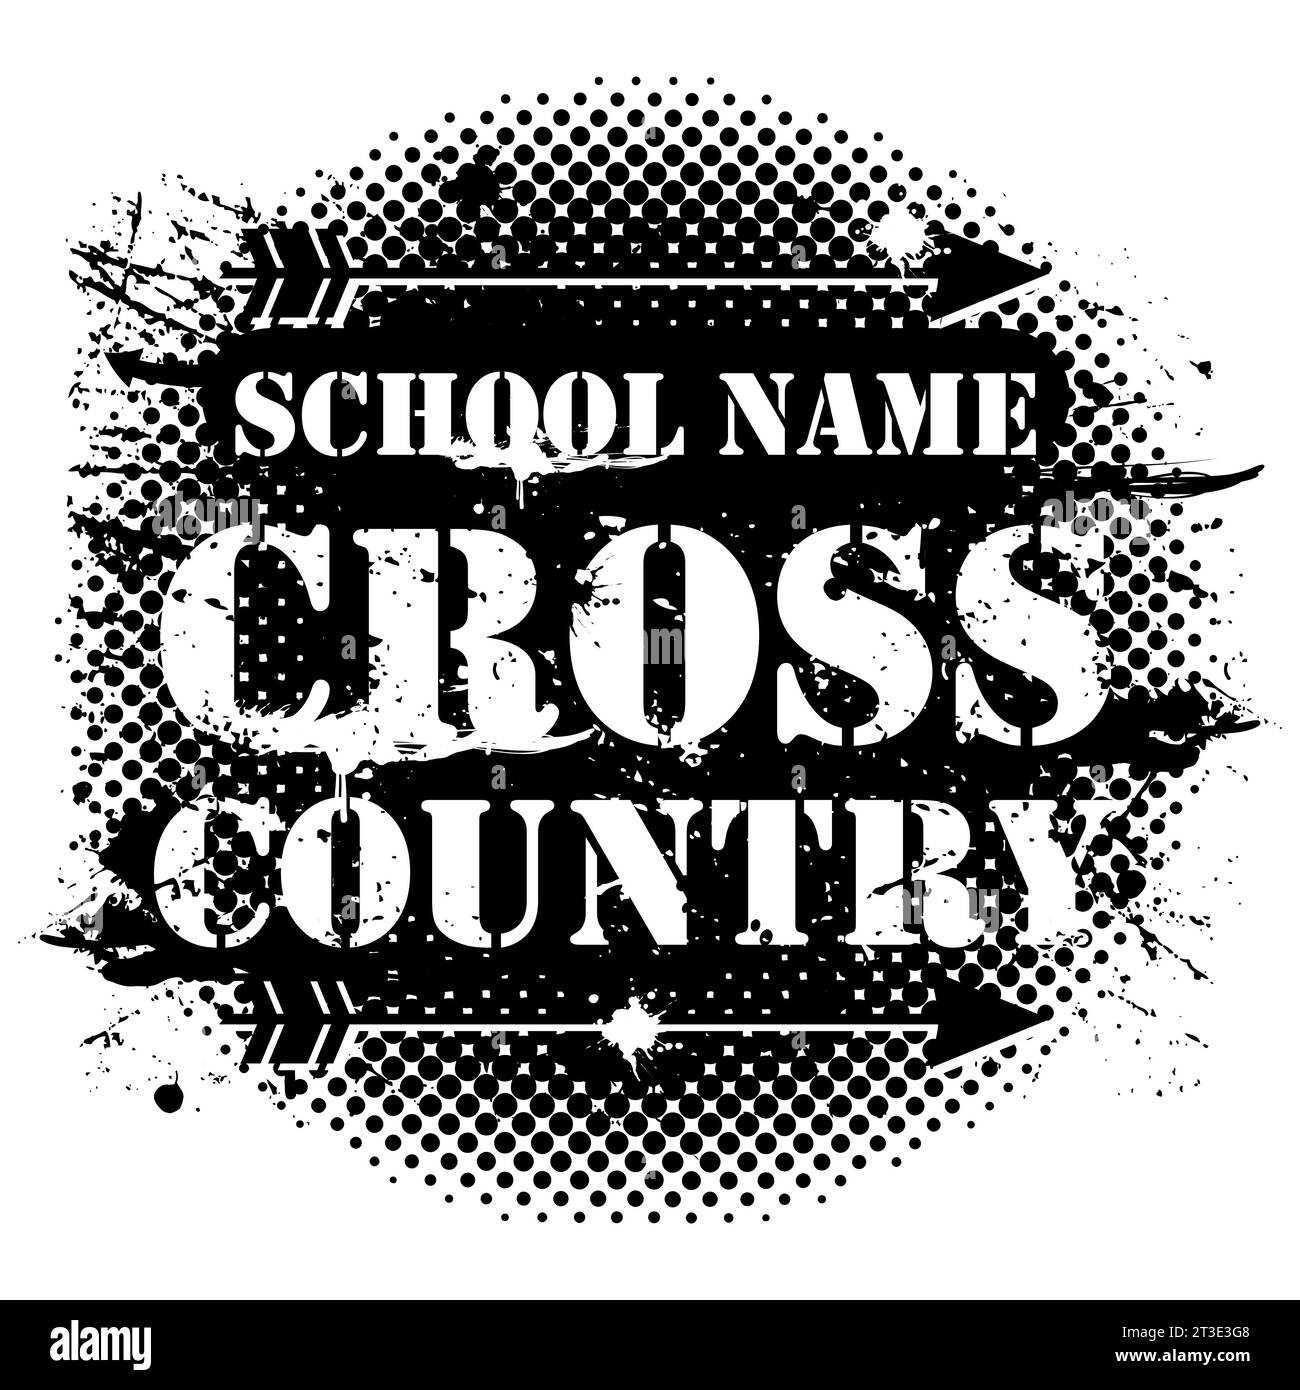 Eine Vektor-Illustration von Cross Country Running Banner für die Schule Stock Vektor